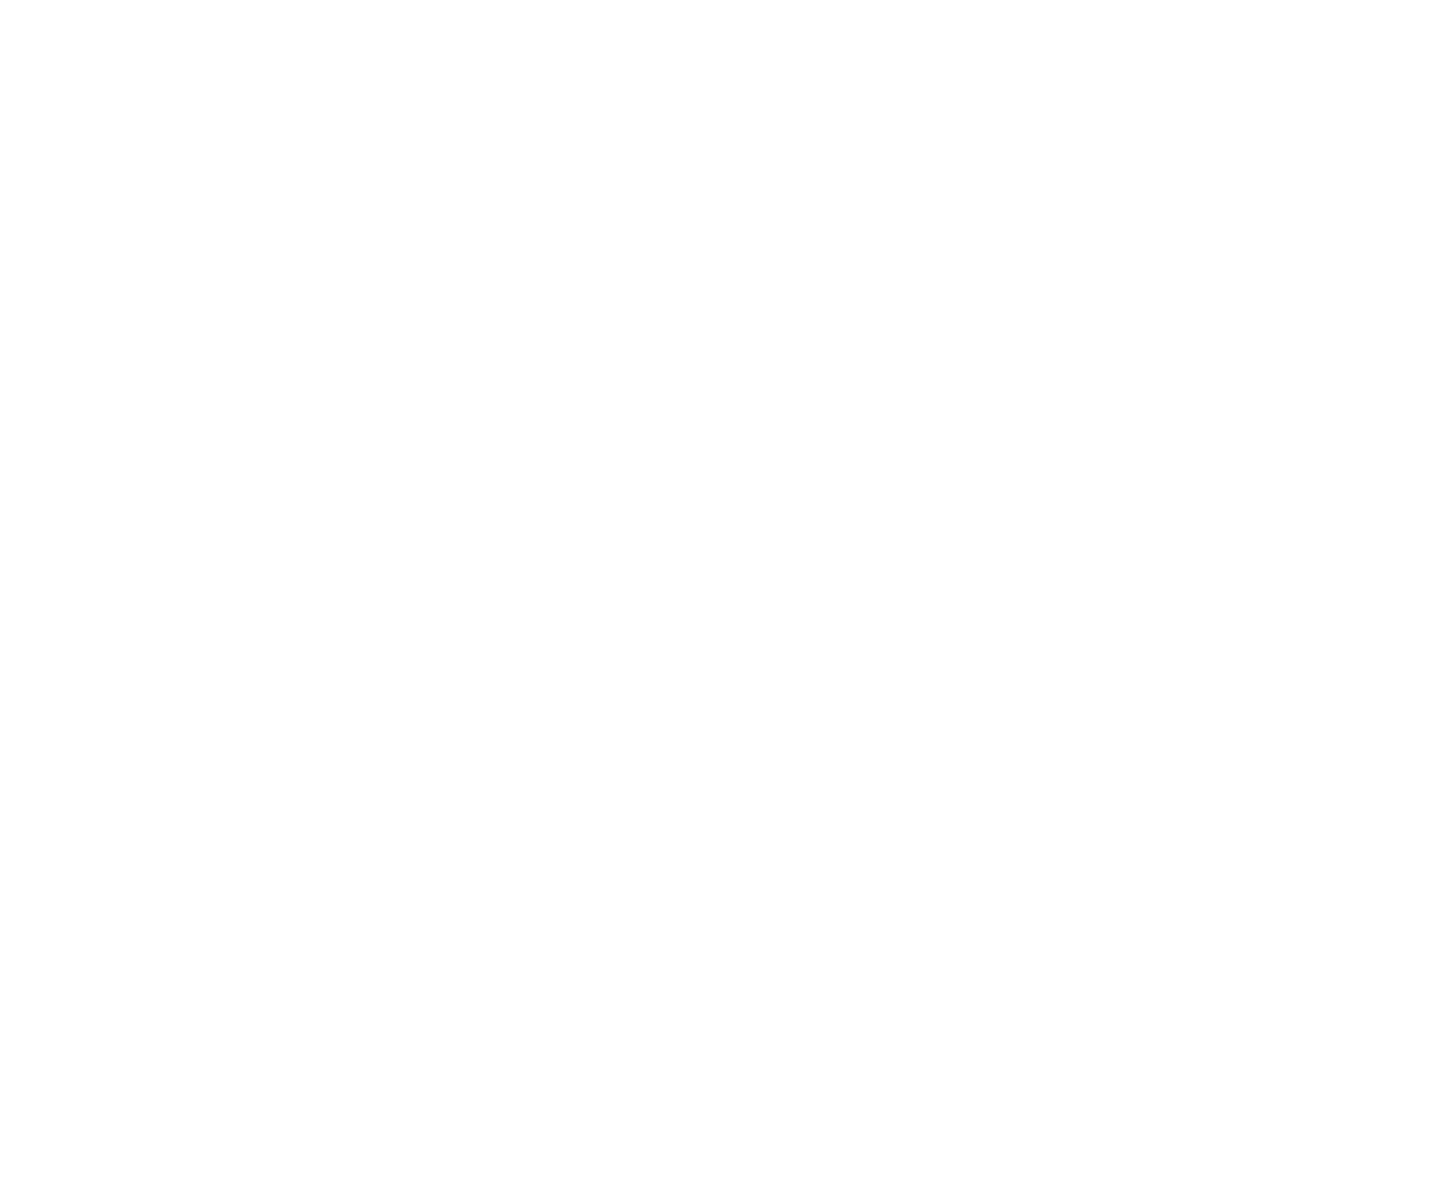 Specifx